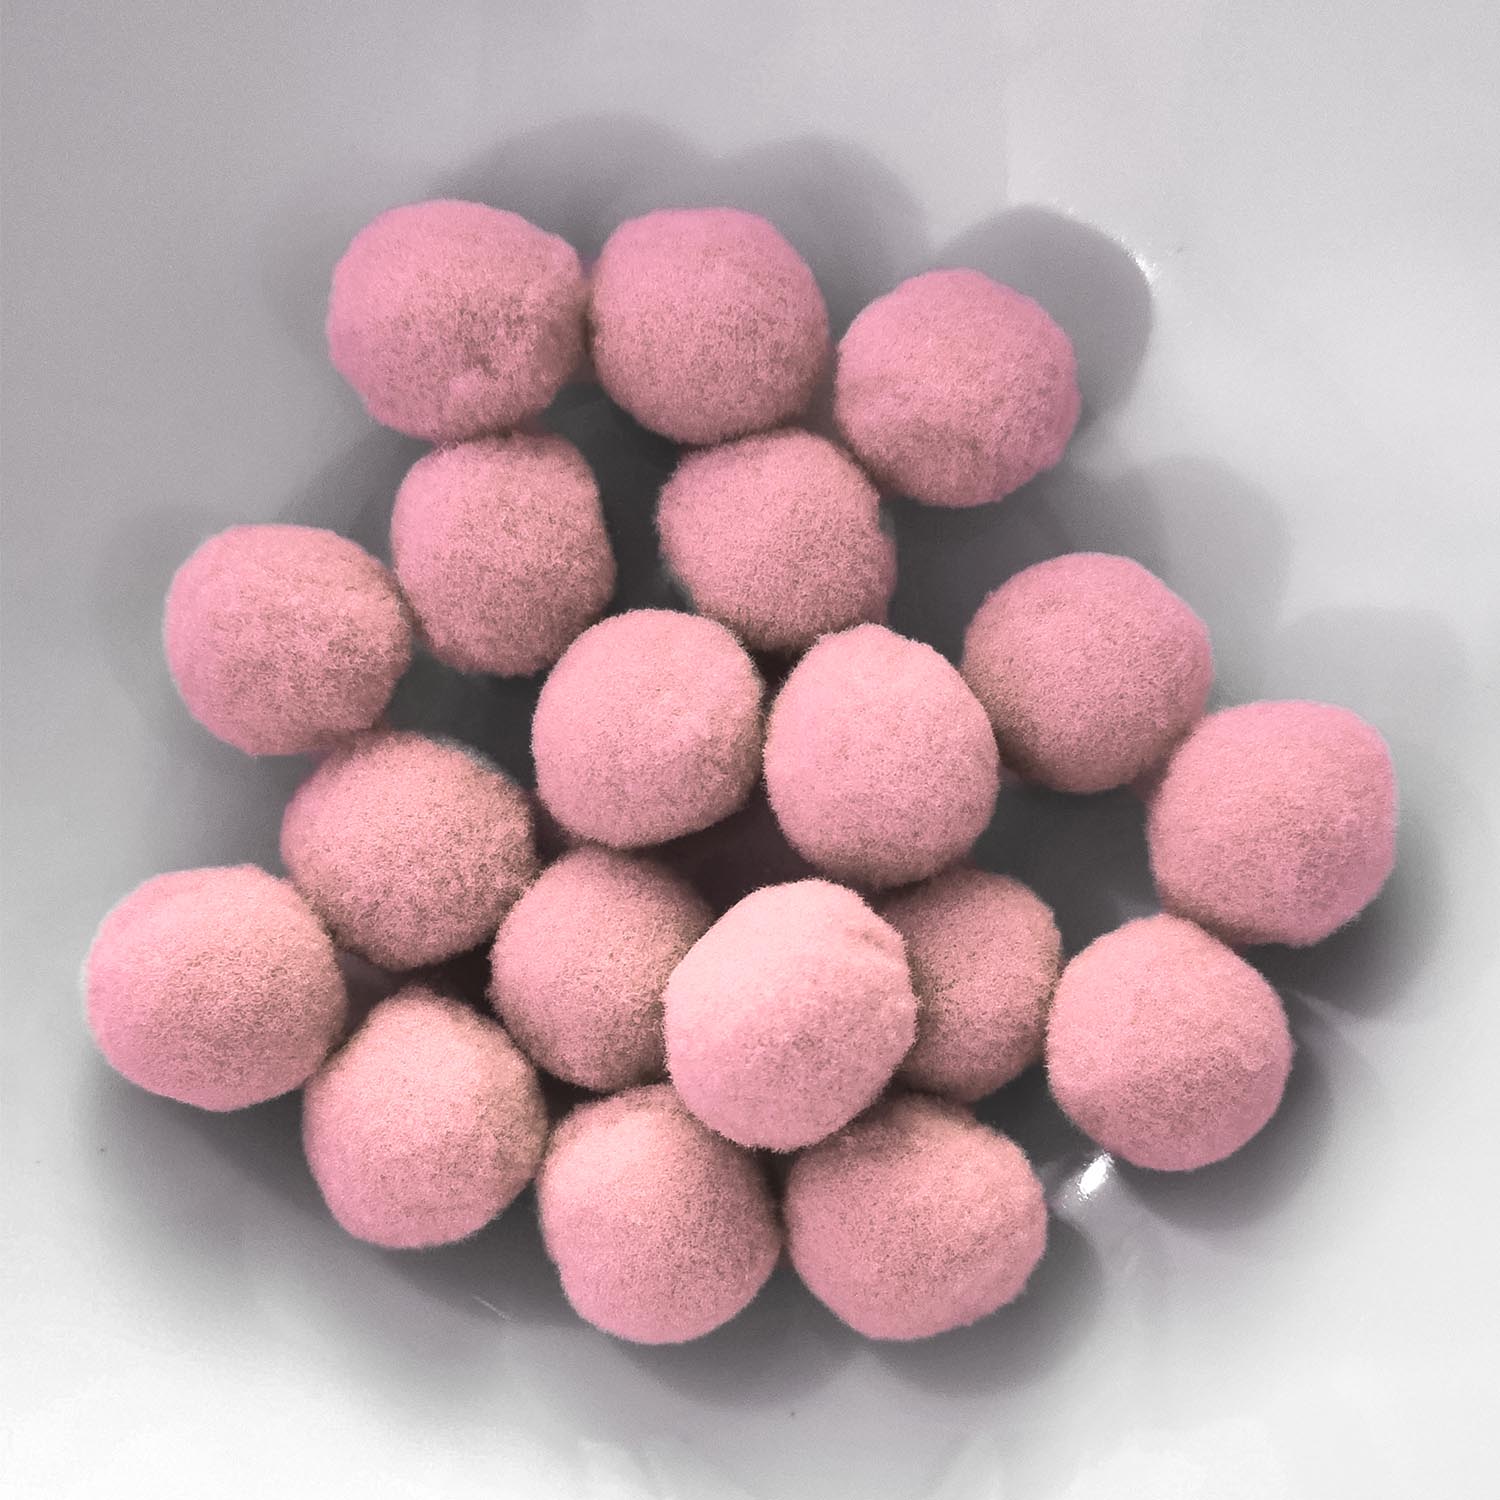 PomPon / Bälle aus Baumwolle - 10 mm / 50er Set - Rosa hell